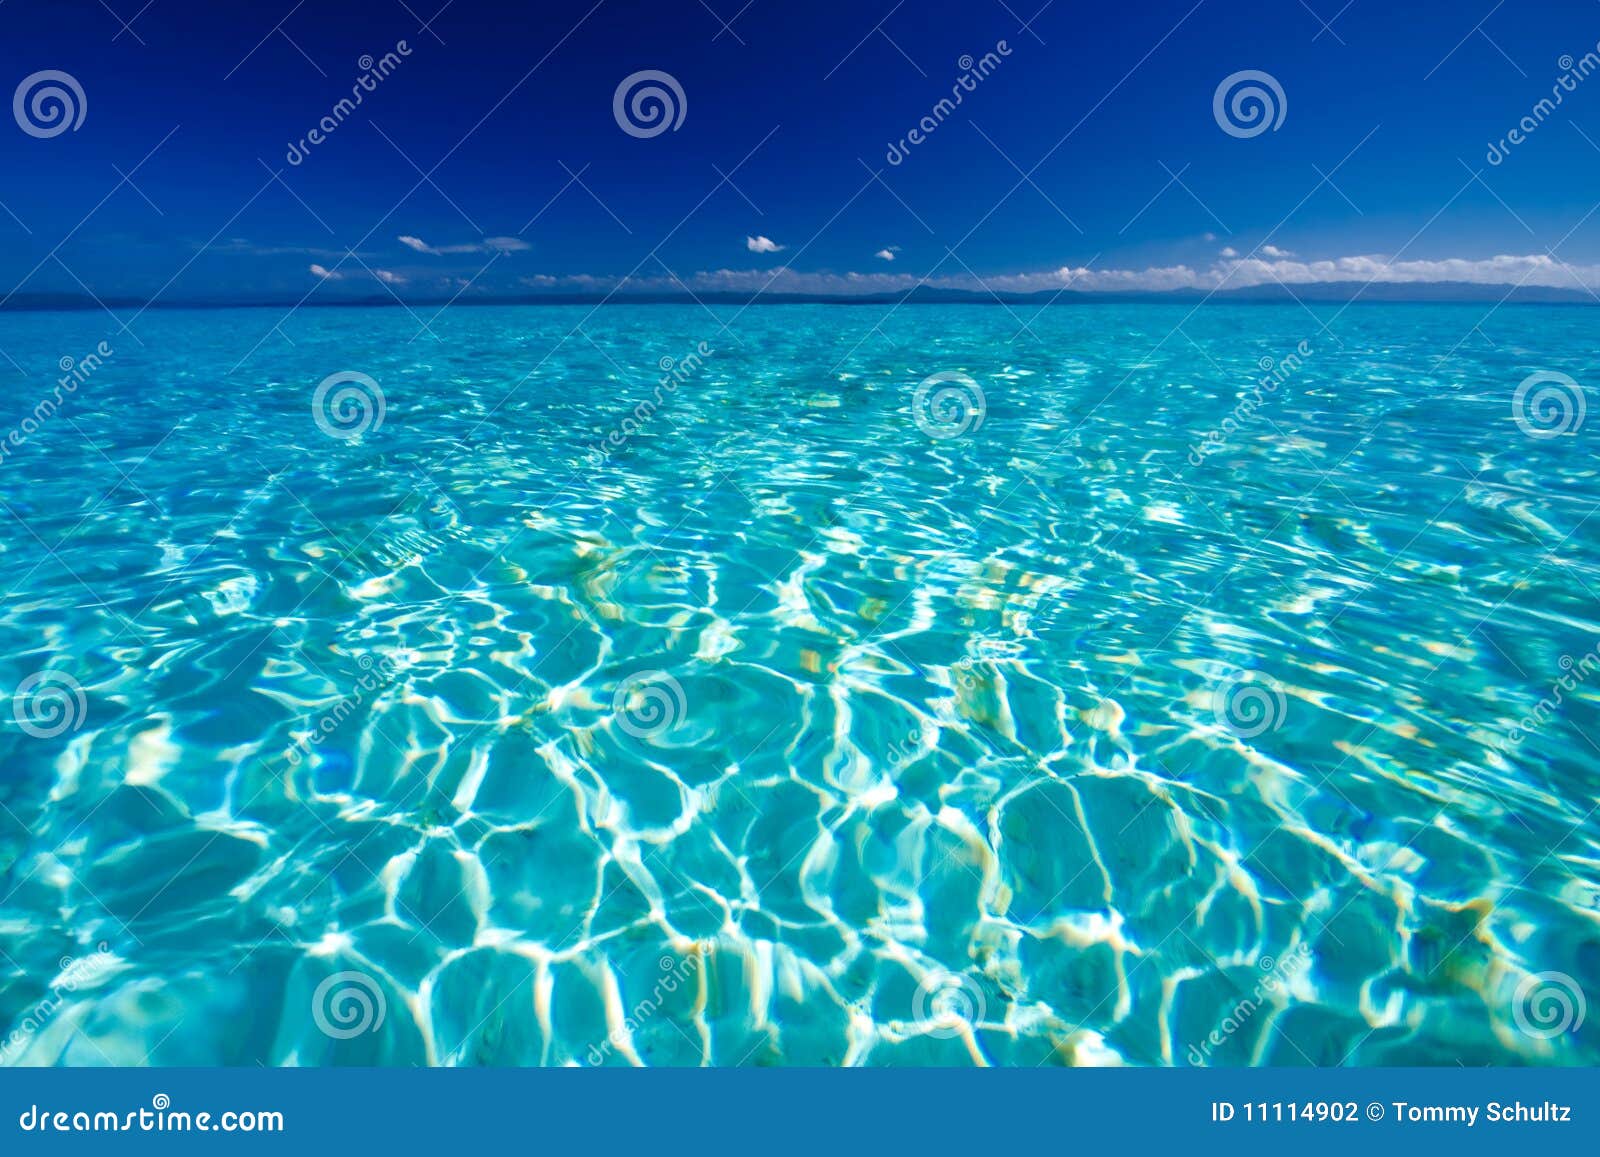 caribbean blue ocean view